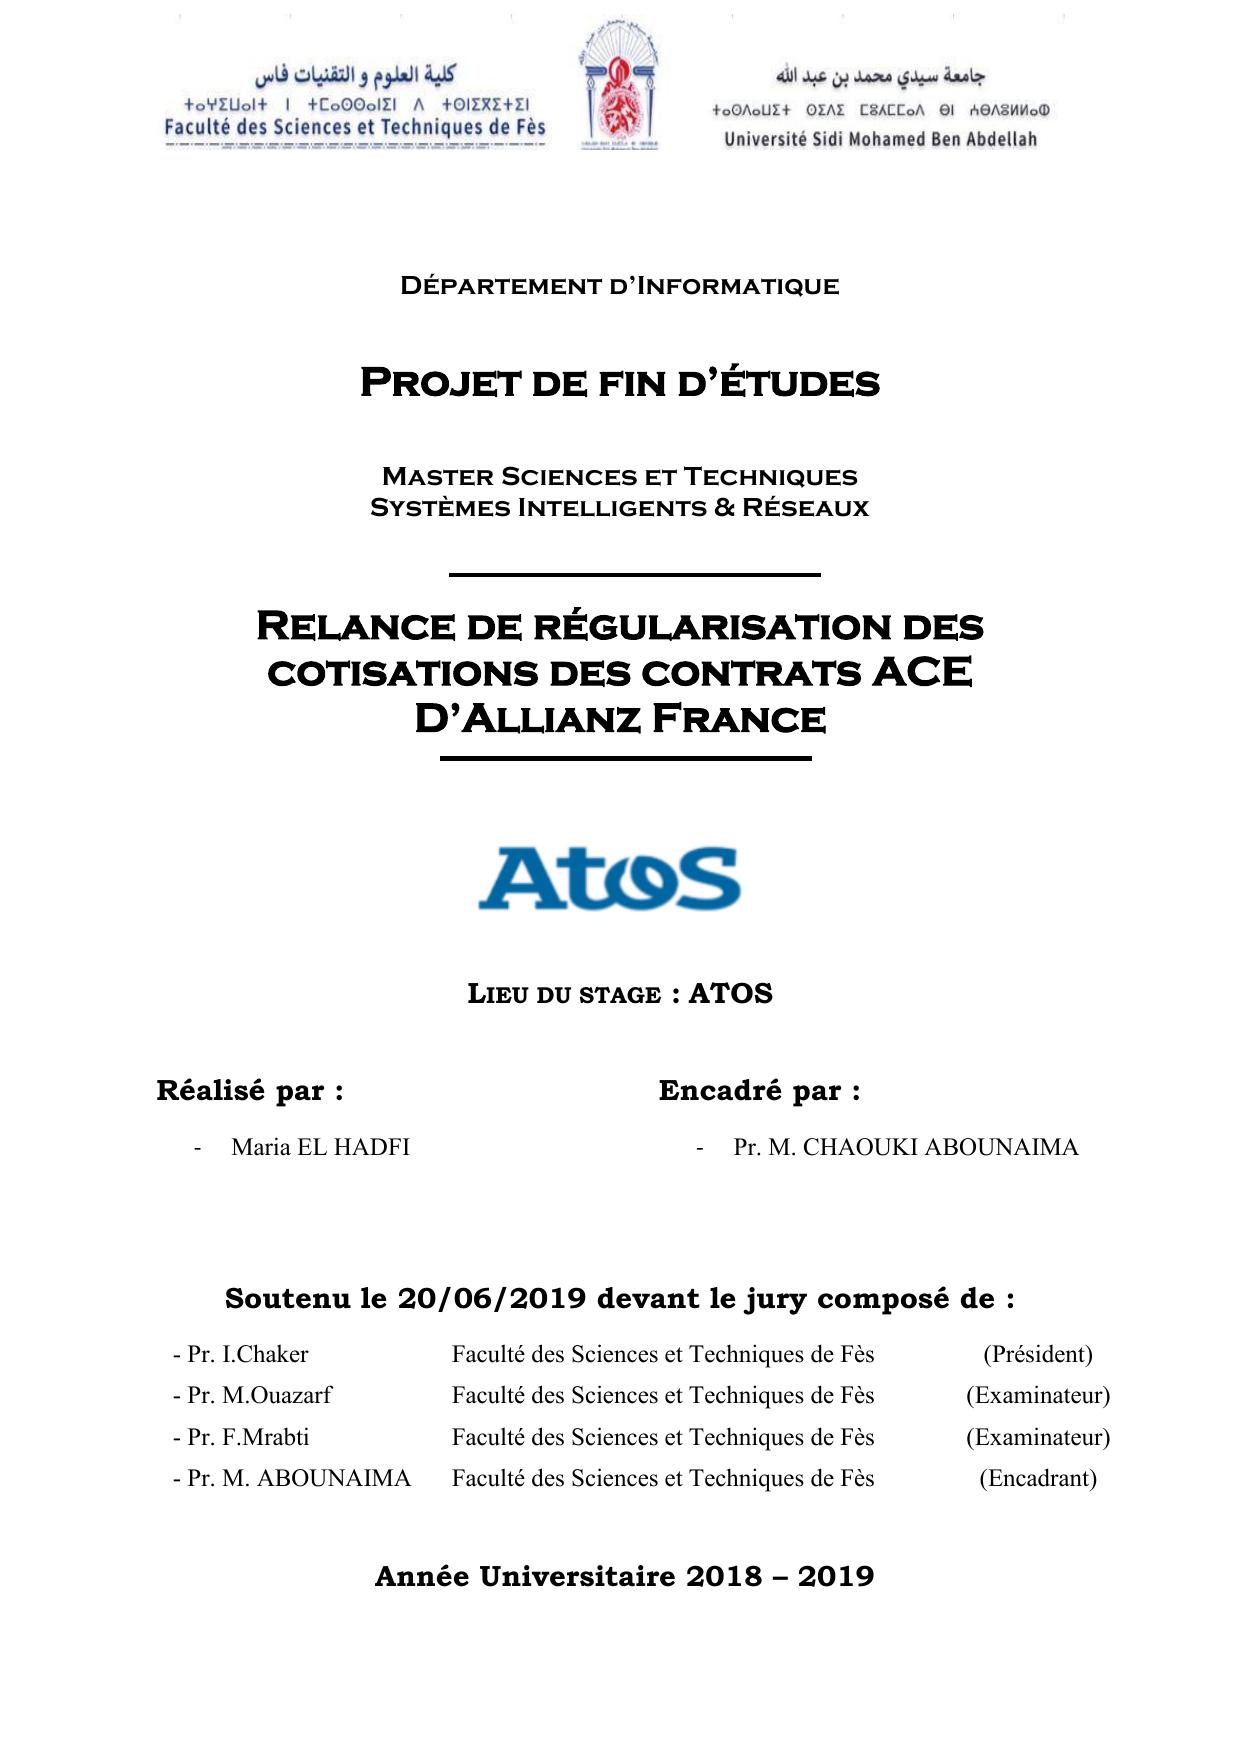 Relance de régularisation des cotisations des contrats ACE D’Allianz France